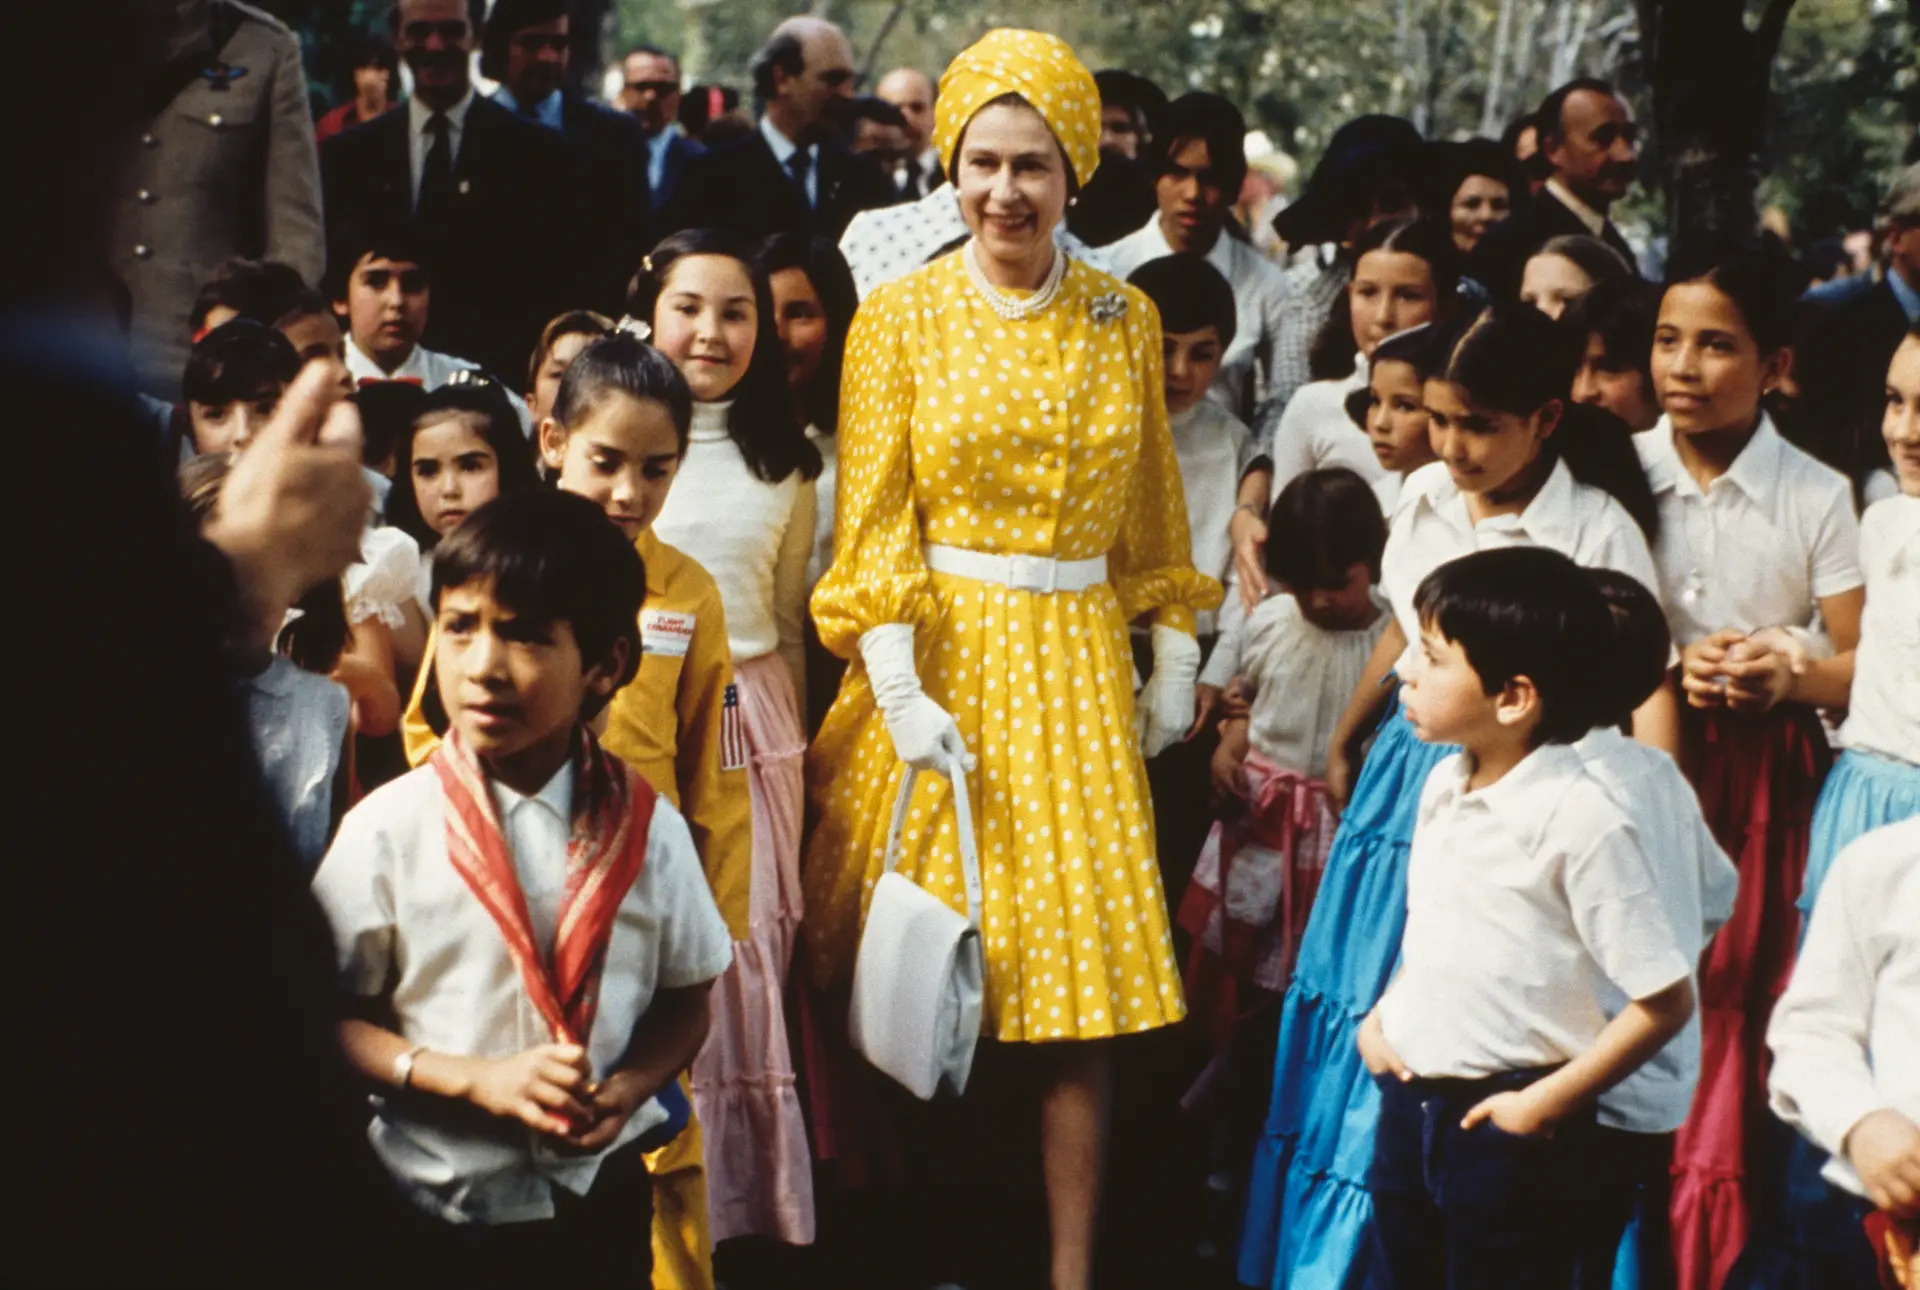 Sorrisos e cor, durante uma visita ao México, em 1975